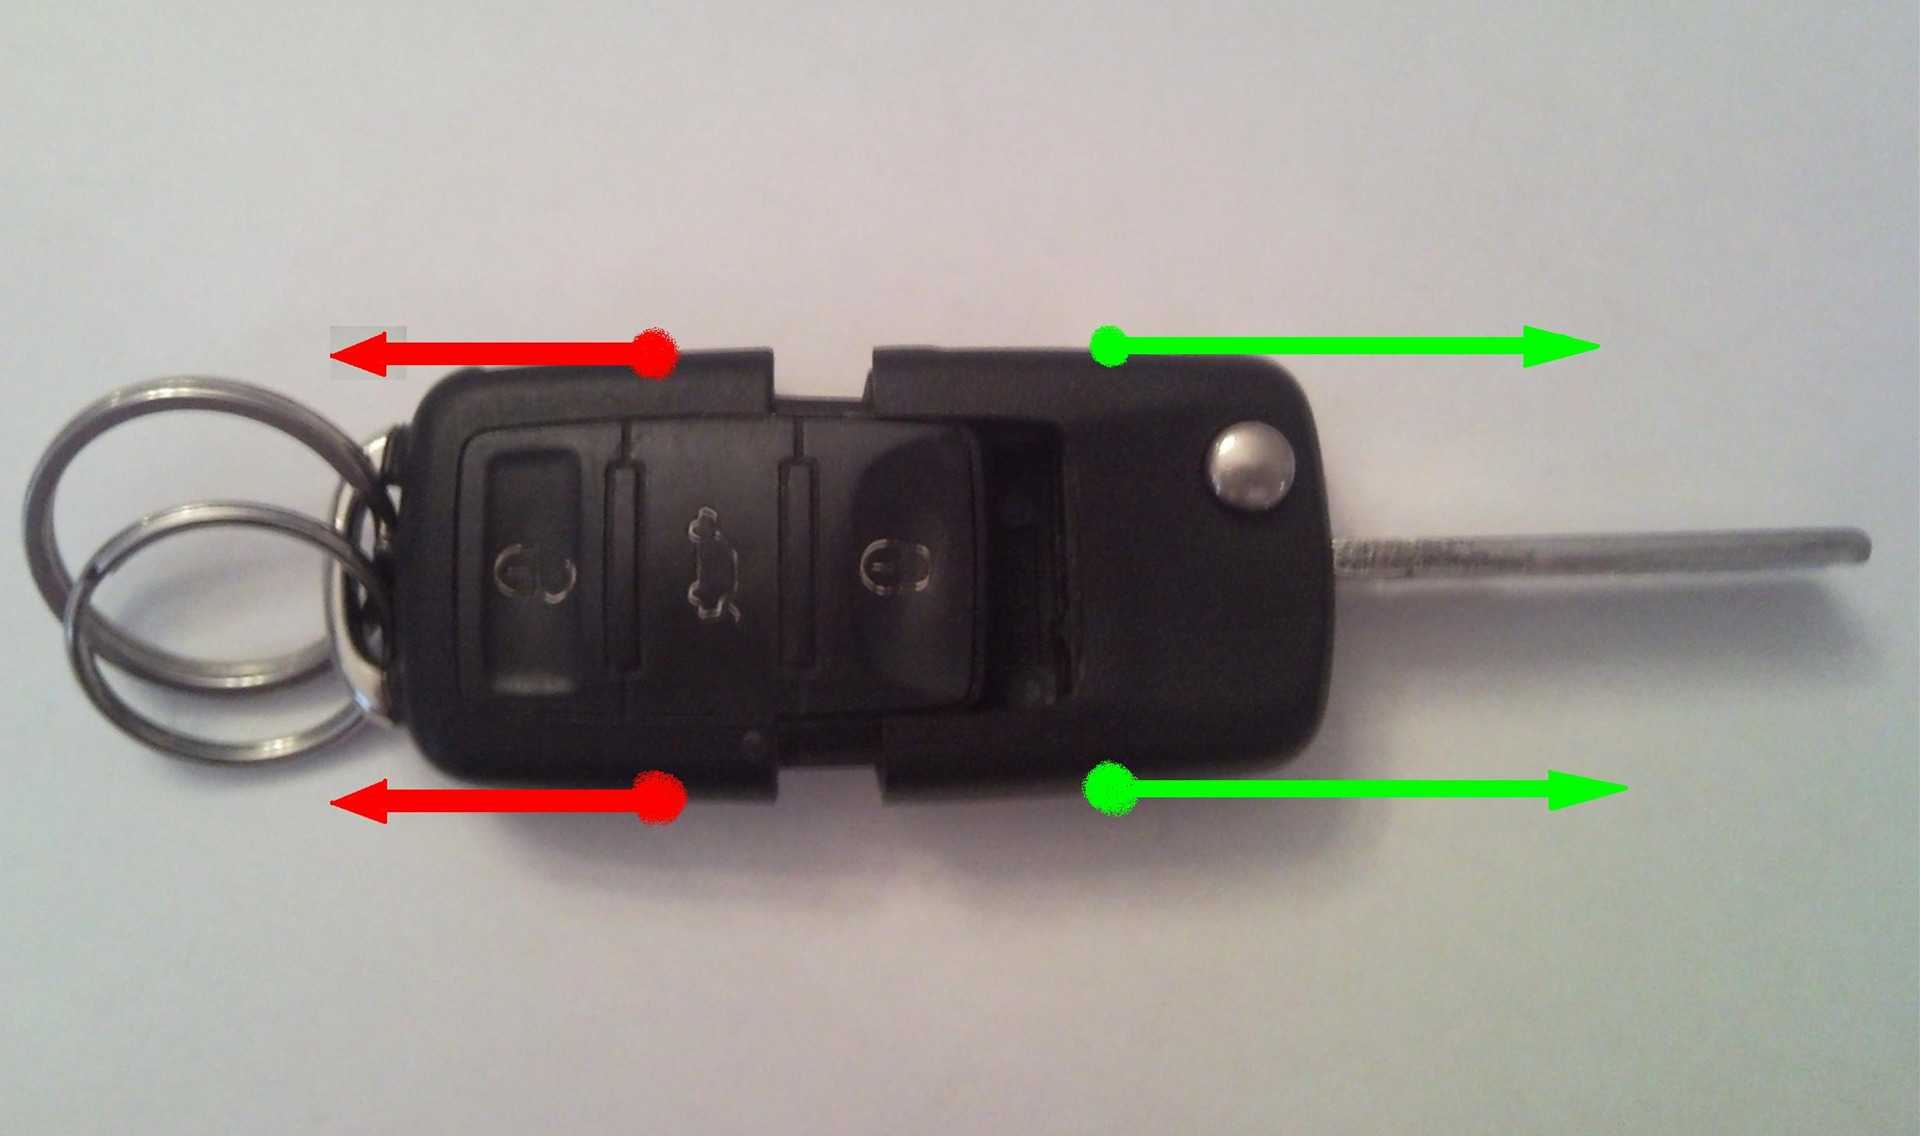 Как поменять батарейку в ключе vw – замена батарейки в брелоке (ключе) vw tiguan. фото, инструкция как поменять —  cheholshop.ru